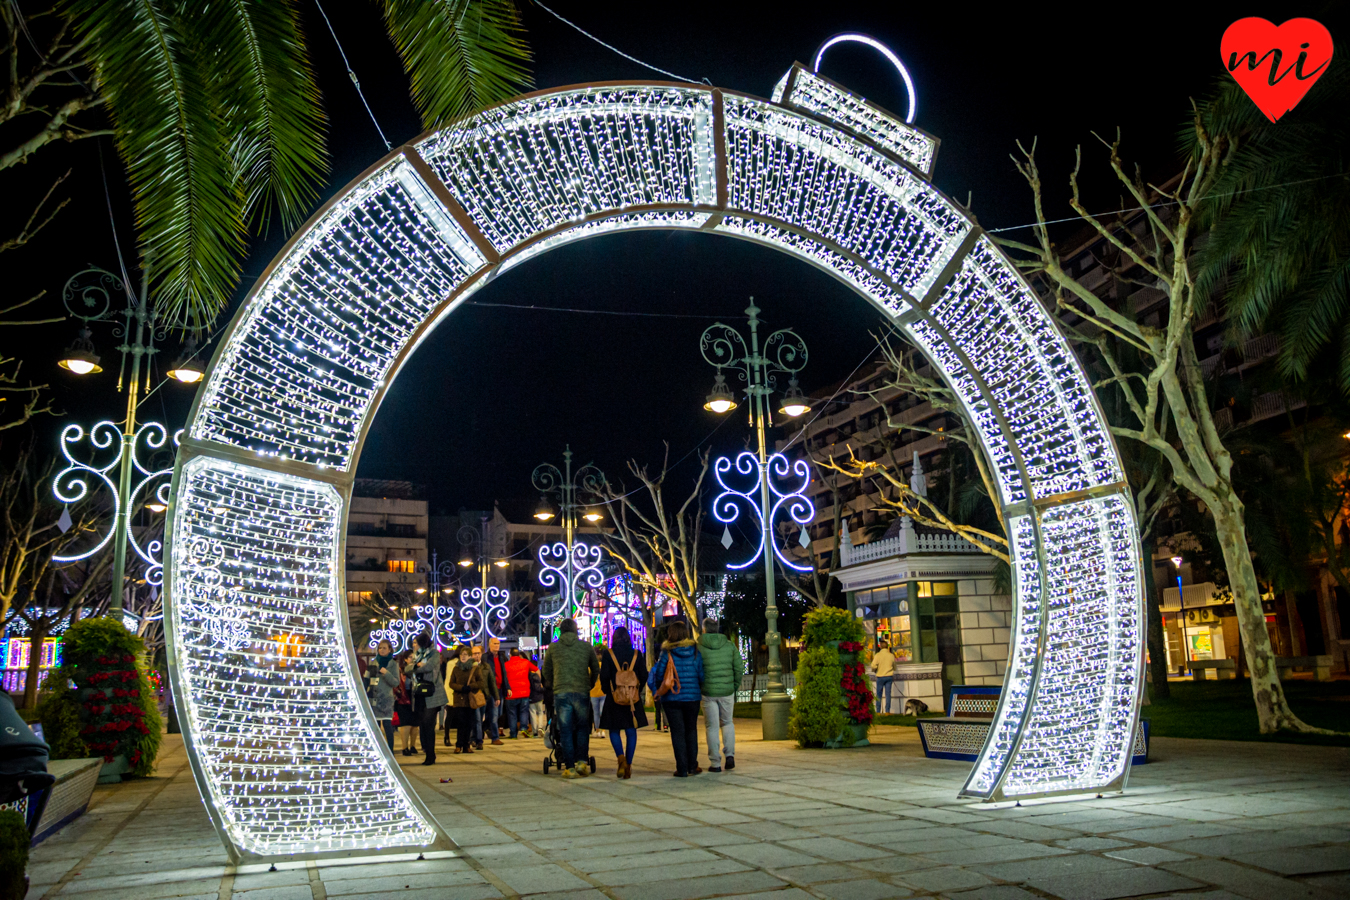 La Gran Fiesta de la Navidad en Villanueva de la Serena